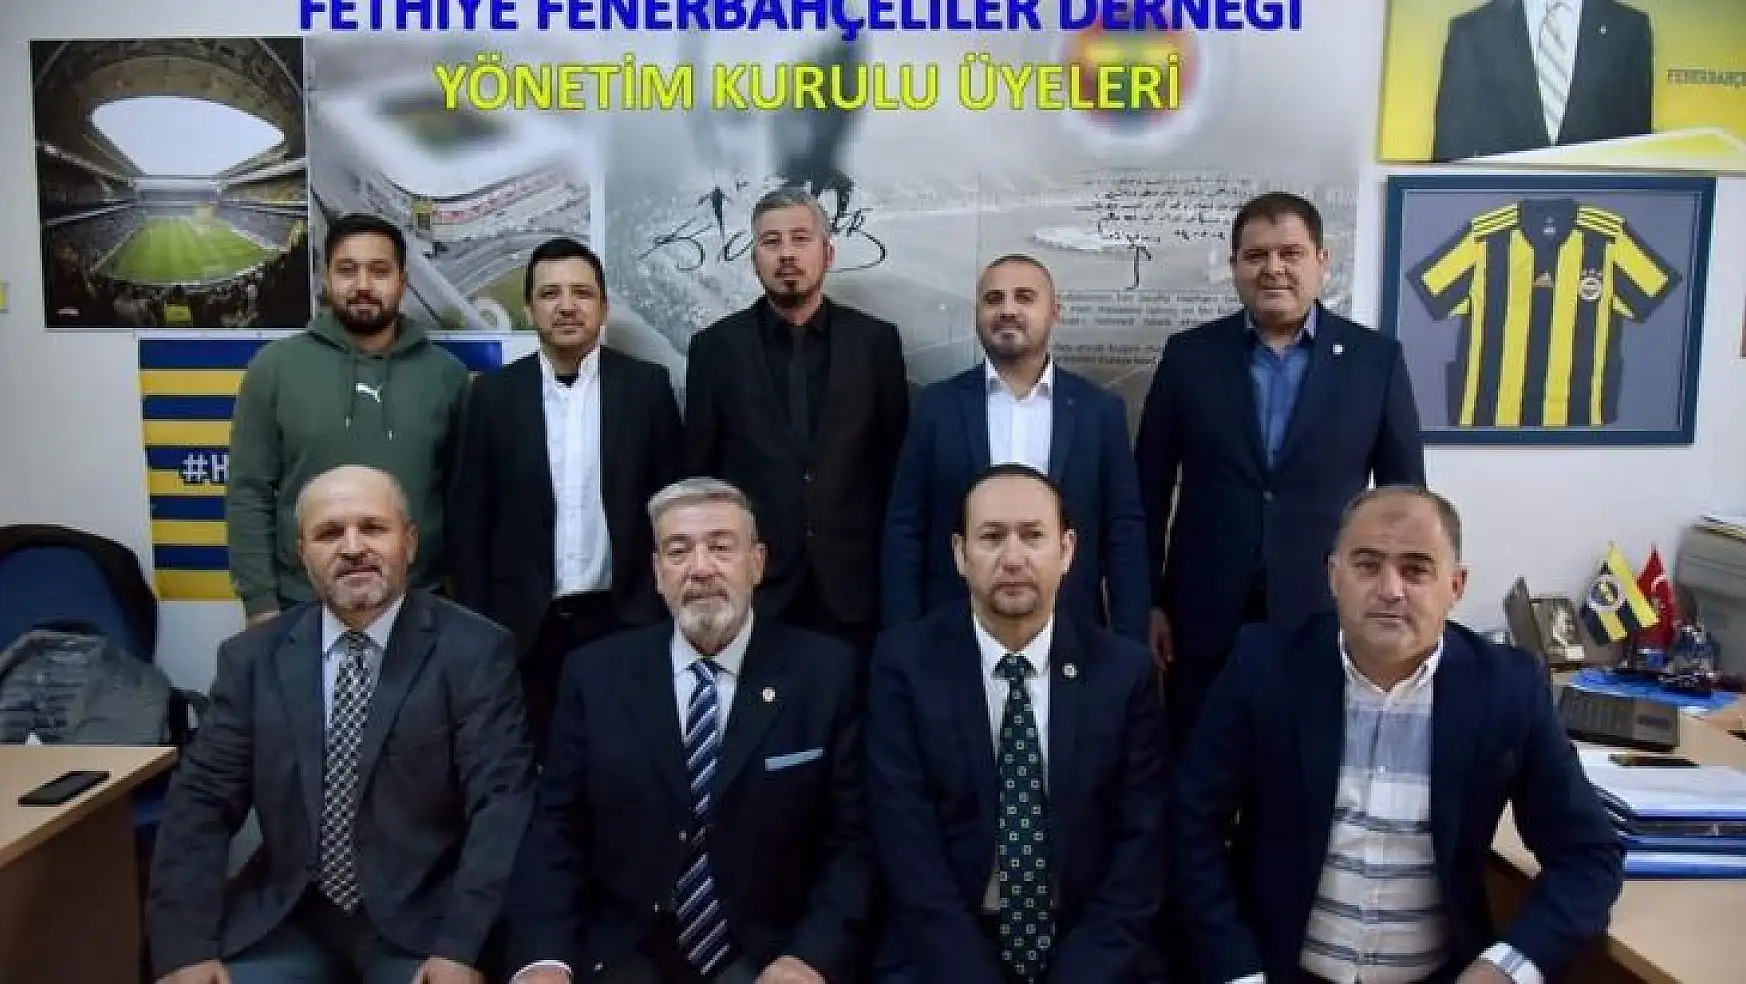 Fethiyeli Fenerbahçeliler Ünal ve ekibiyle 'devam' dedi